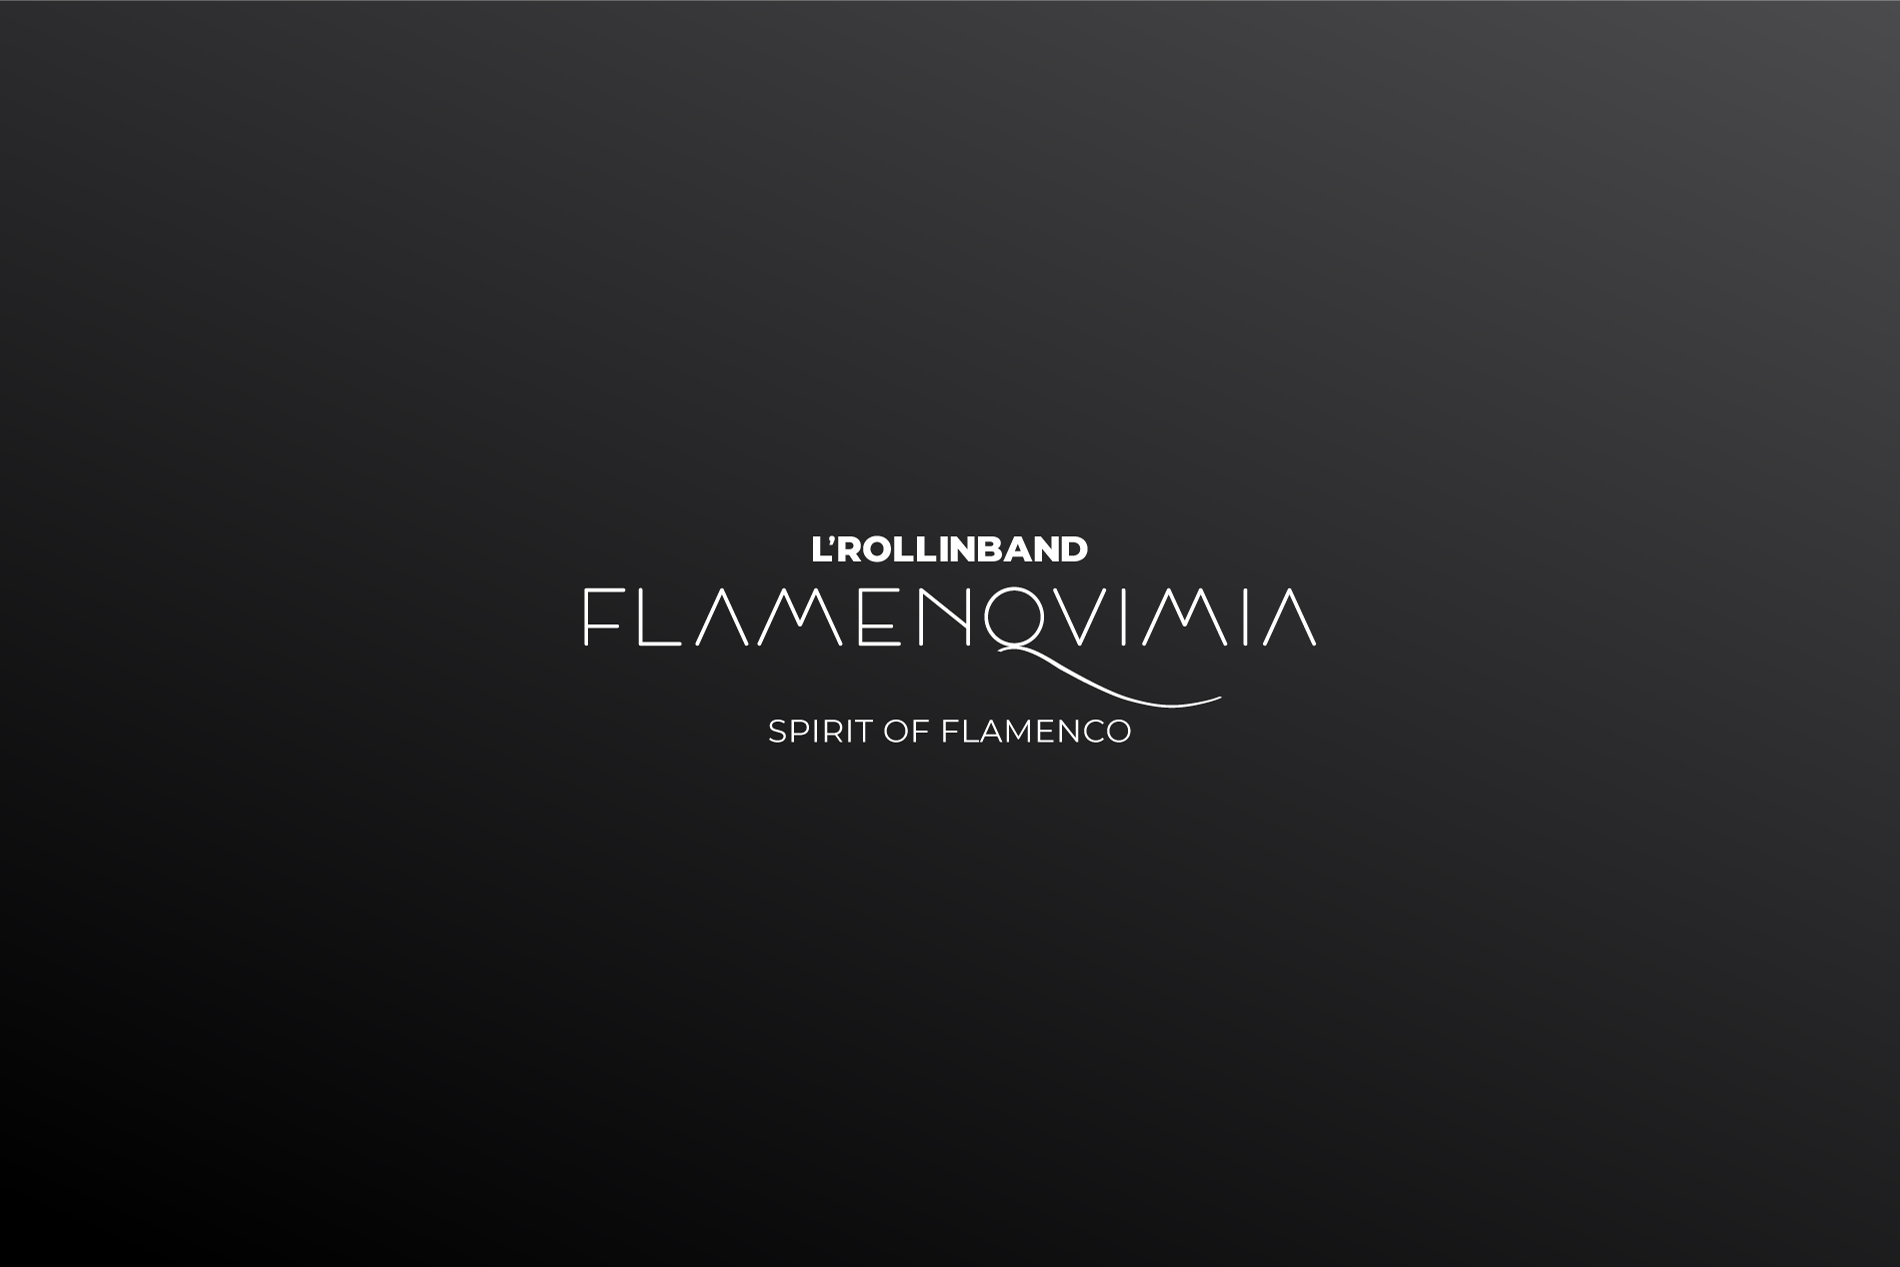 Logotipo blanco Flamenquimia LRollin Band sobre fondo negro branding por The Acctitude diseño web